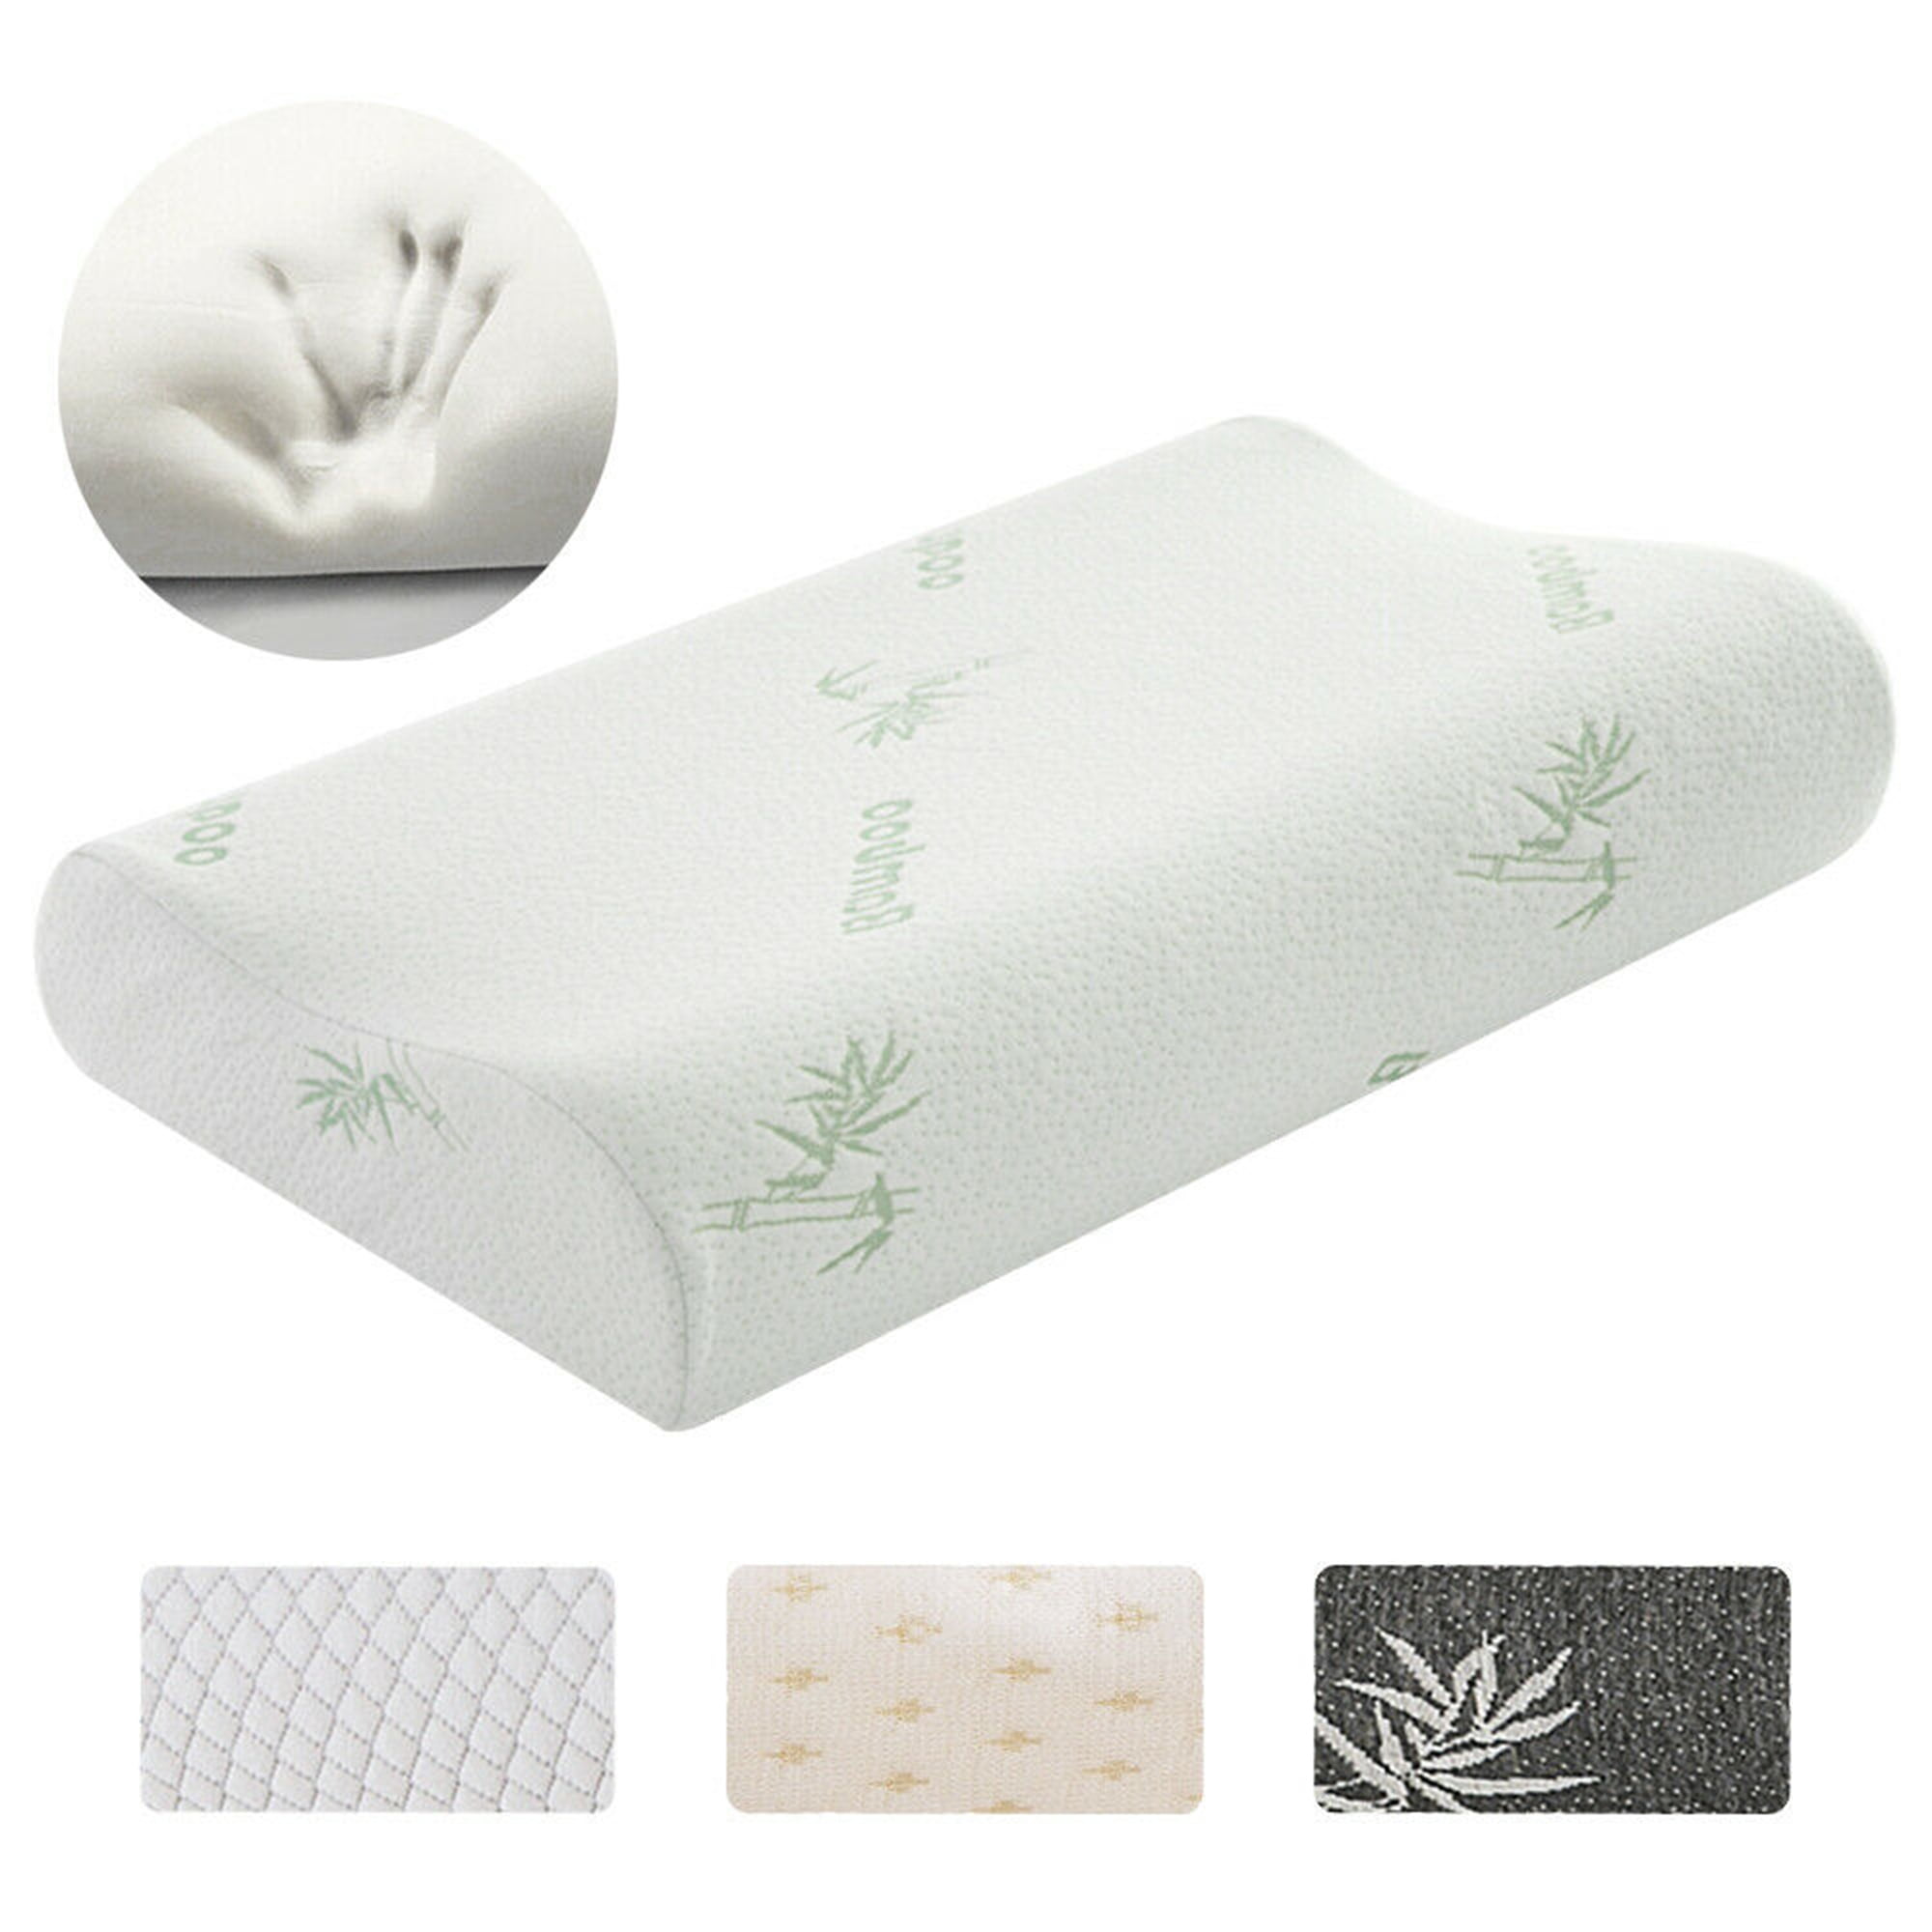 Rectangle Neck Pillows Orthopedic Bamboo Fiber Memory Foam Sleep Pillow KV 